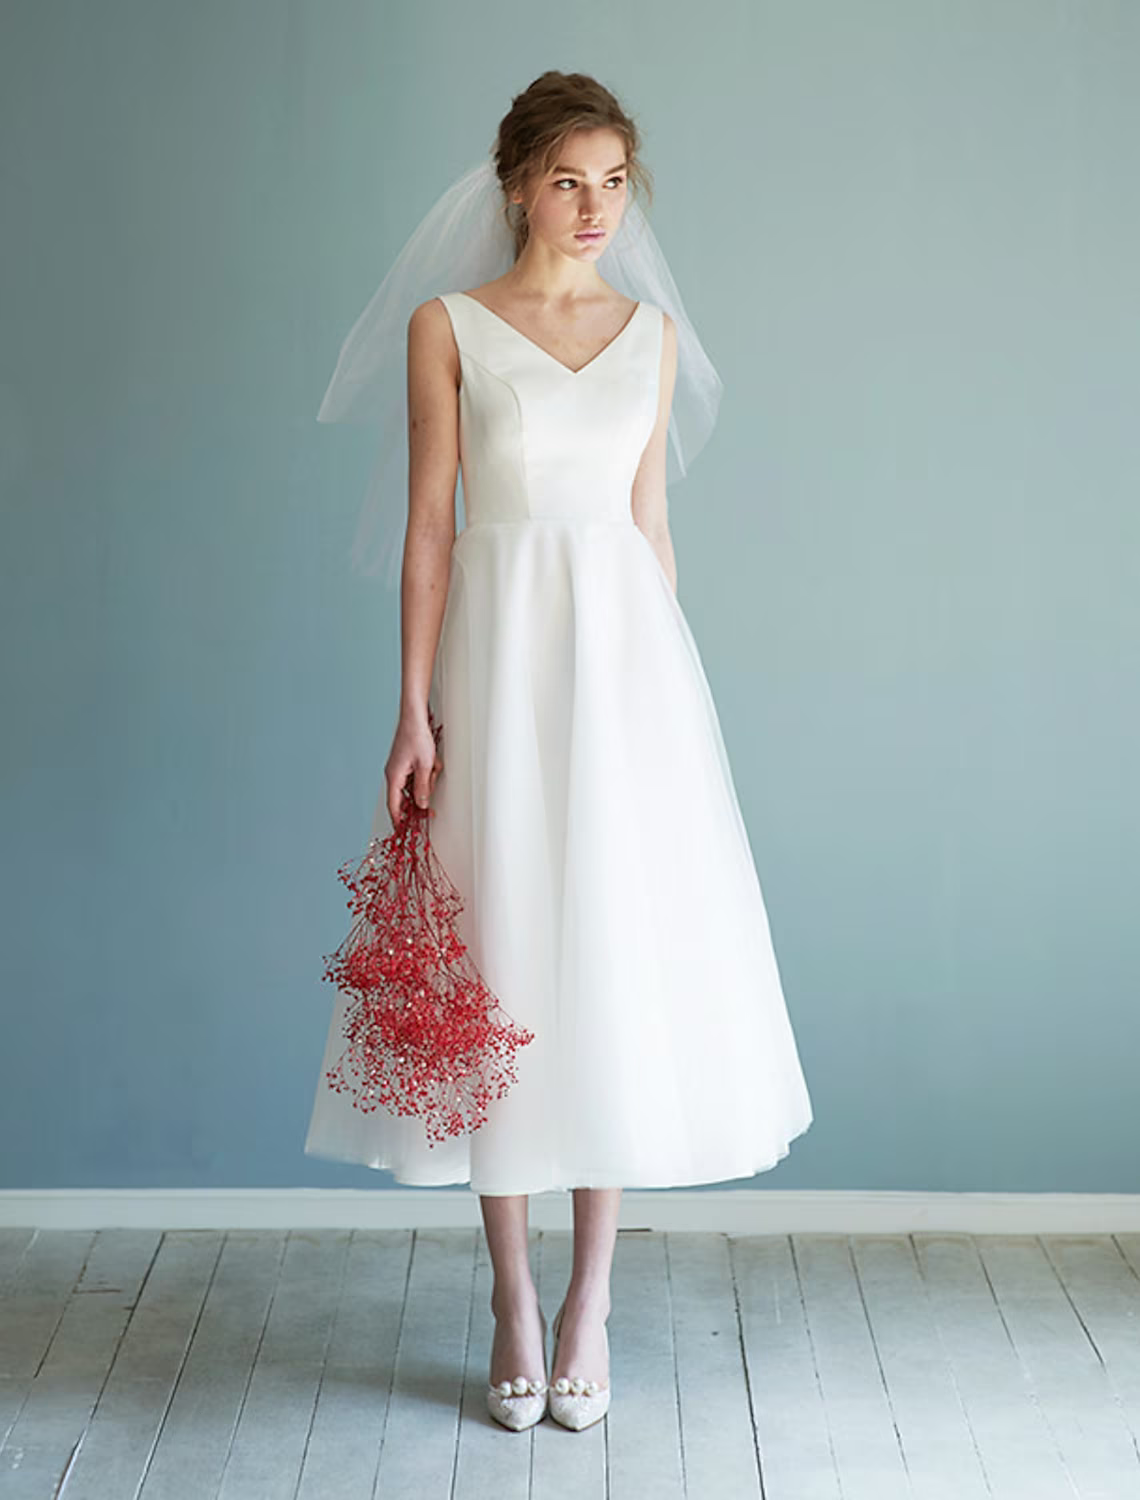 Bridal Shower Little White Dresses Wedding Dresses Length A-Line Sleeveless V Neck Satin With